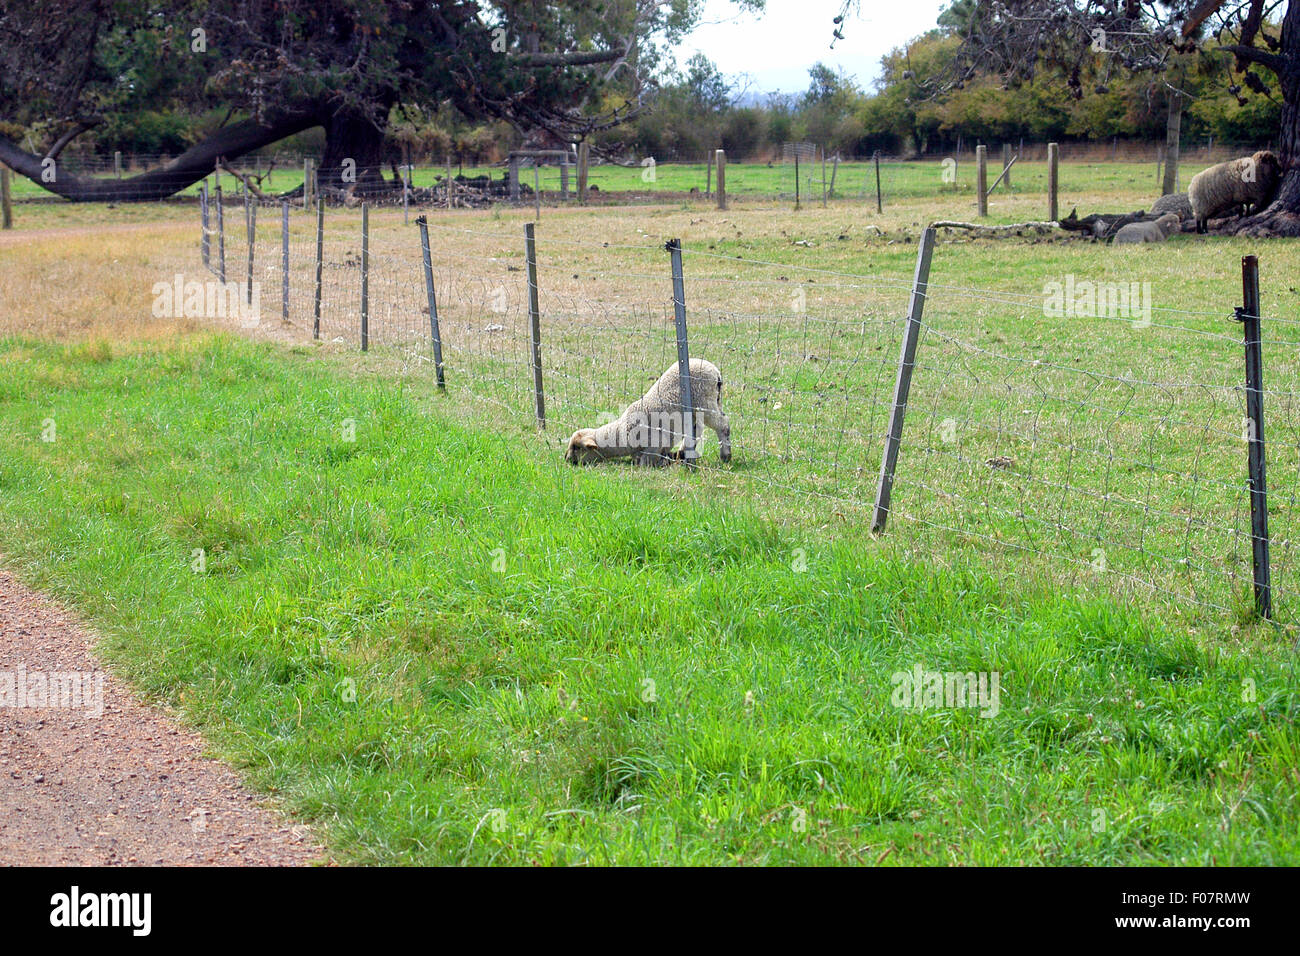 Cordero comiendo hierba a través de la valla, Australia Occidental Foto de stock